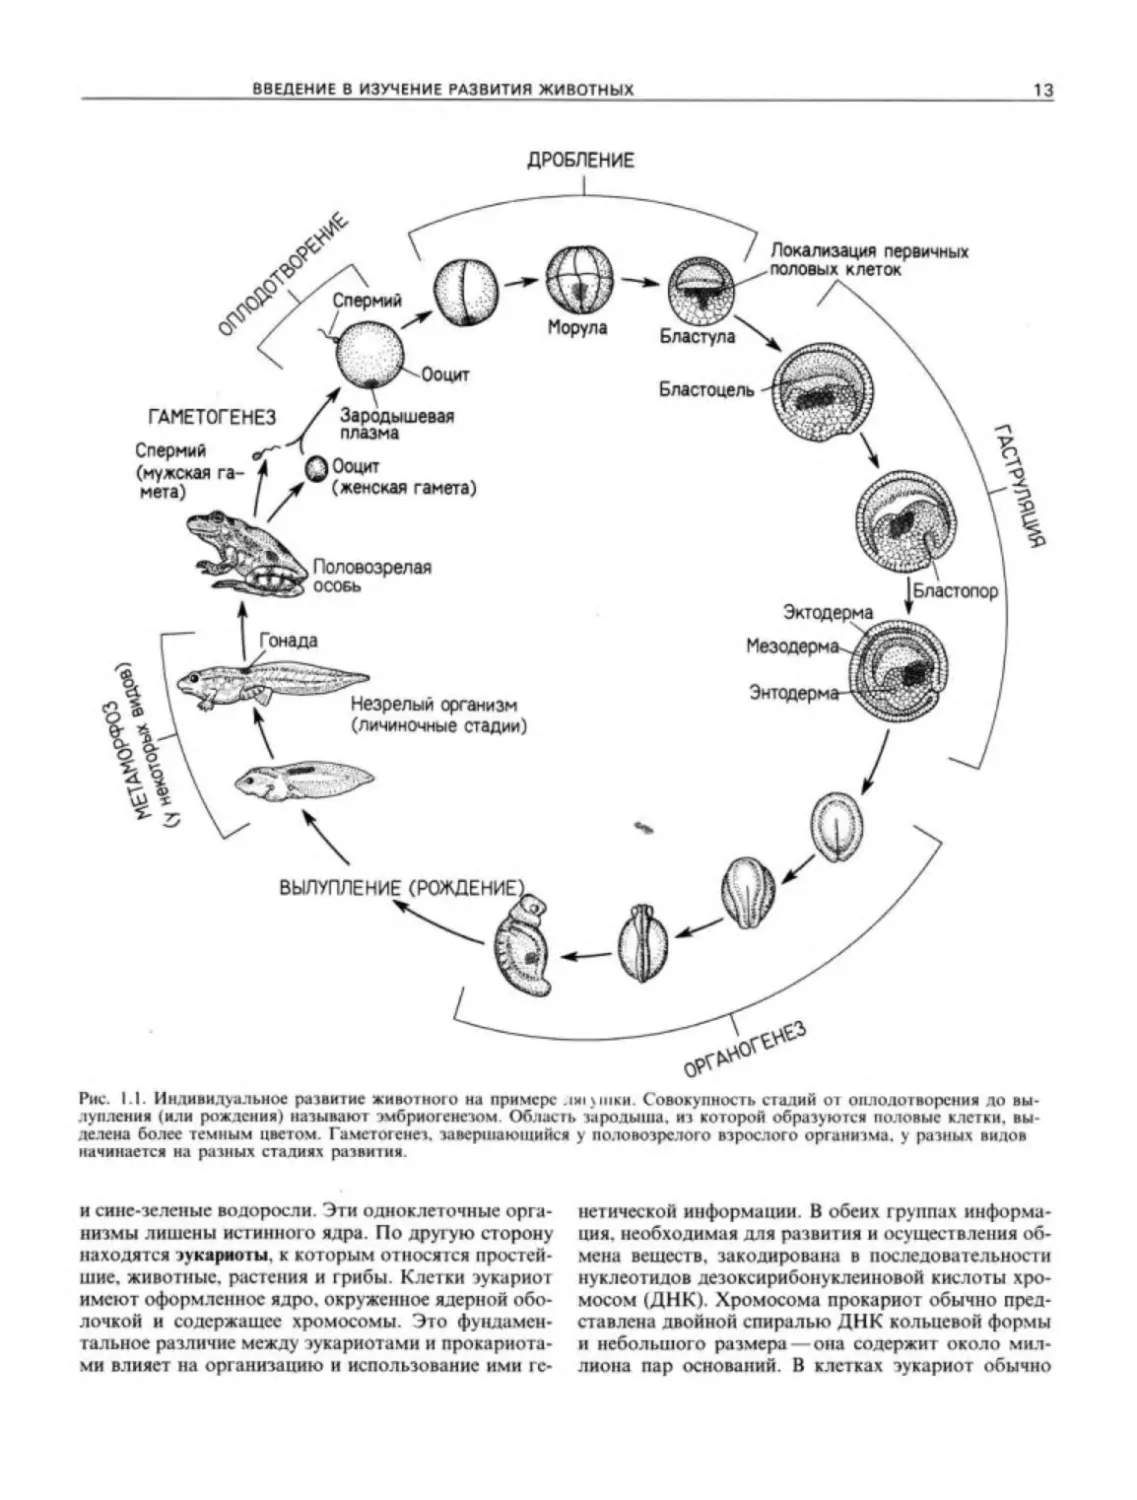 Цикл онтогенез. Этапы эмбрионального развития лягушки. Этапы эмбрионального развития земноводных. Стадии развития эмбриона лягушки. Схема эмбрионального развития лягушки.